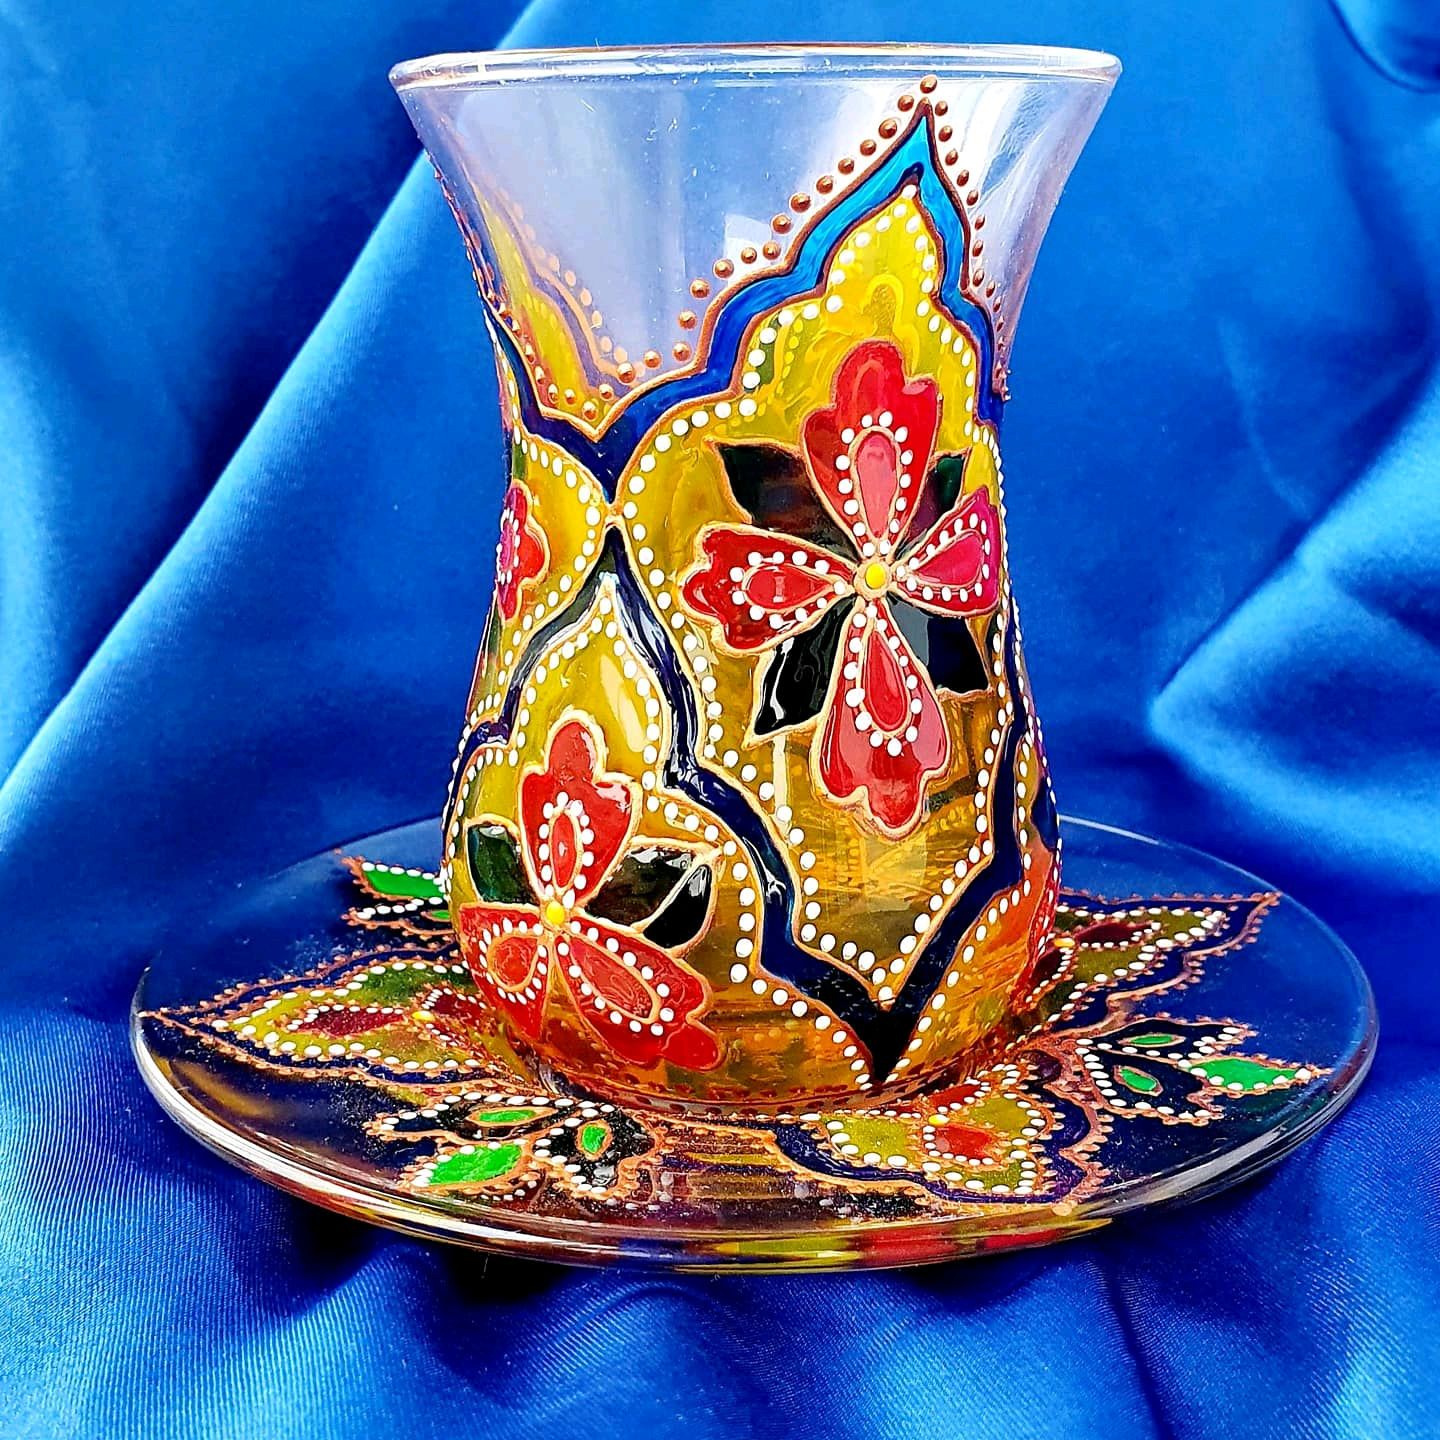 Азербайджанский стакан для чая